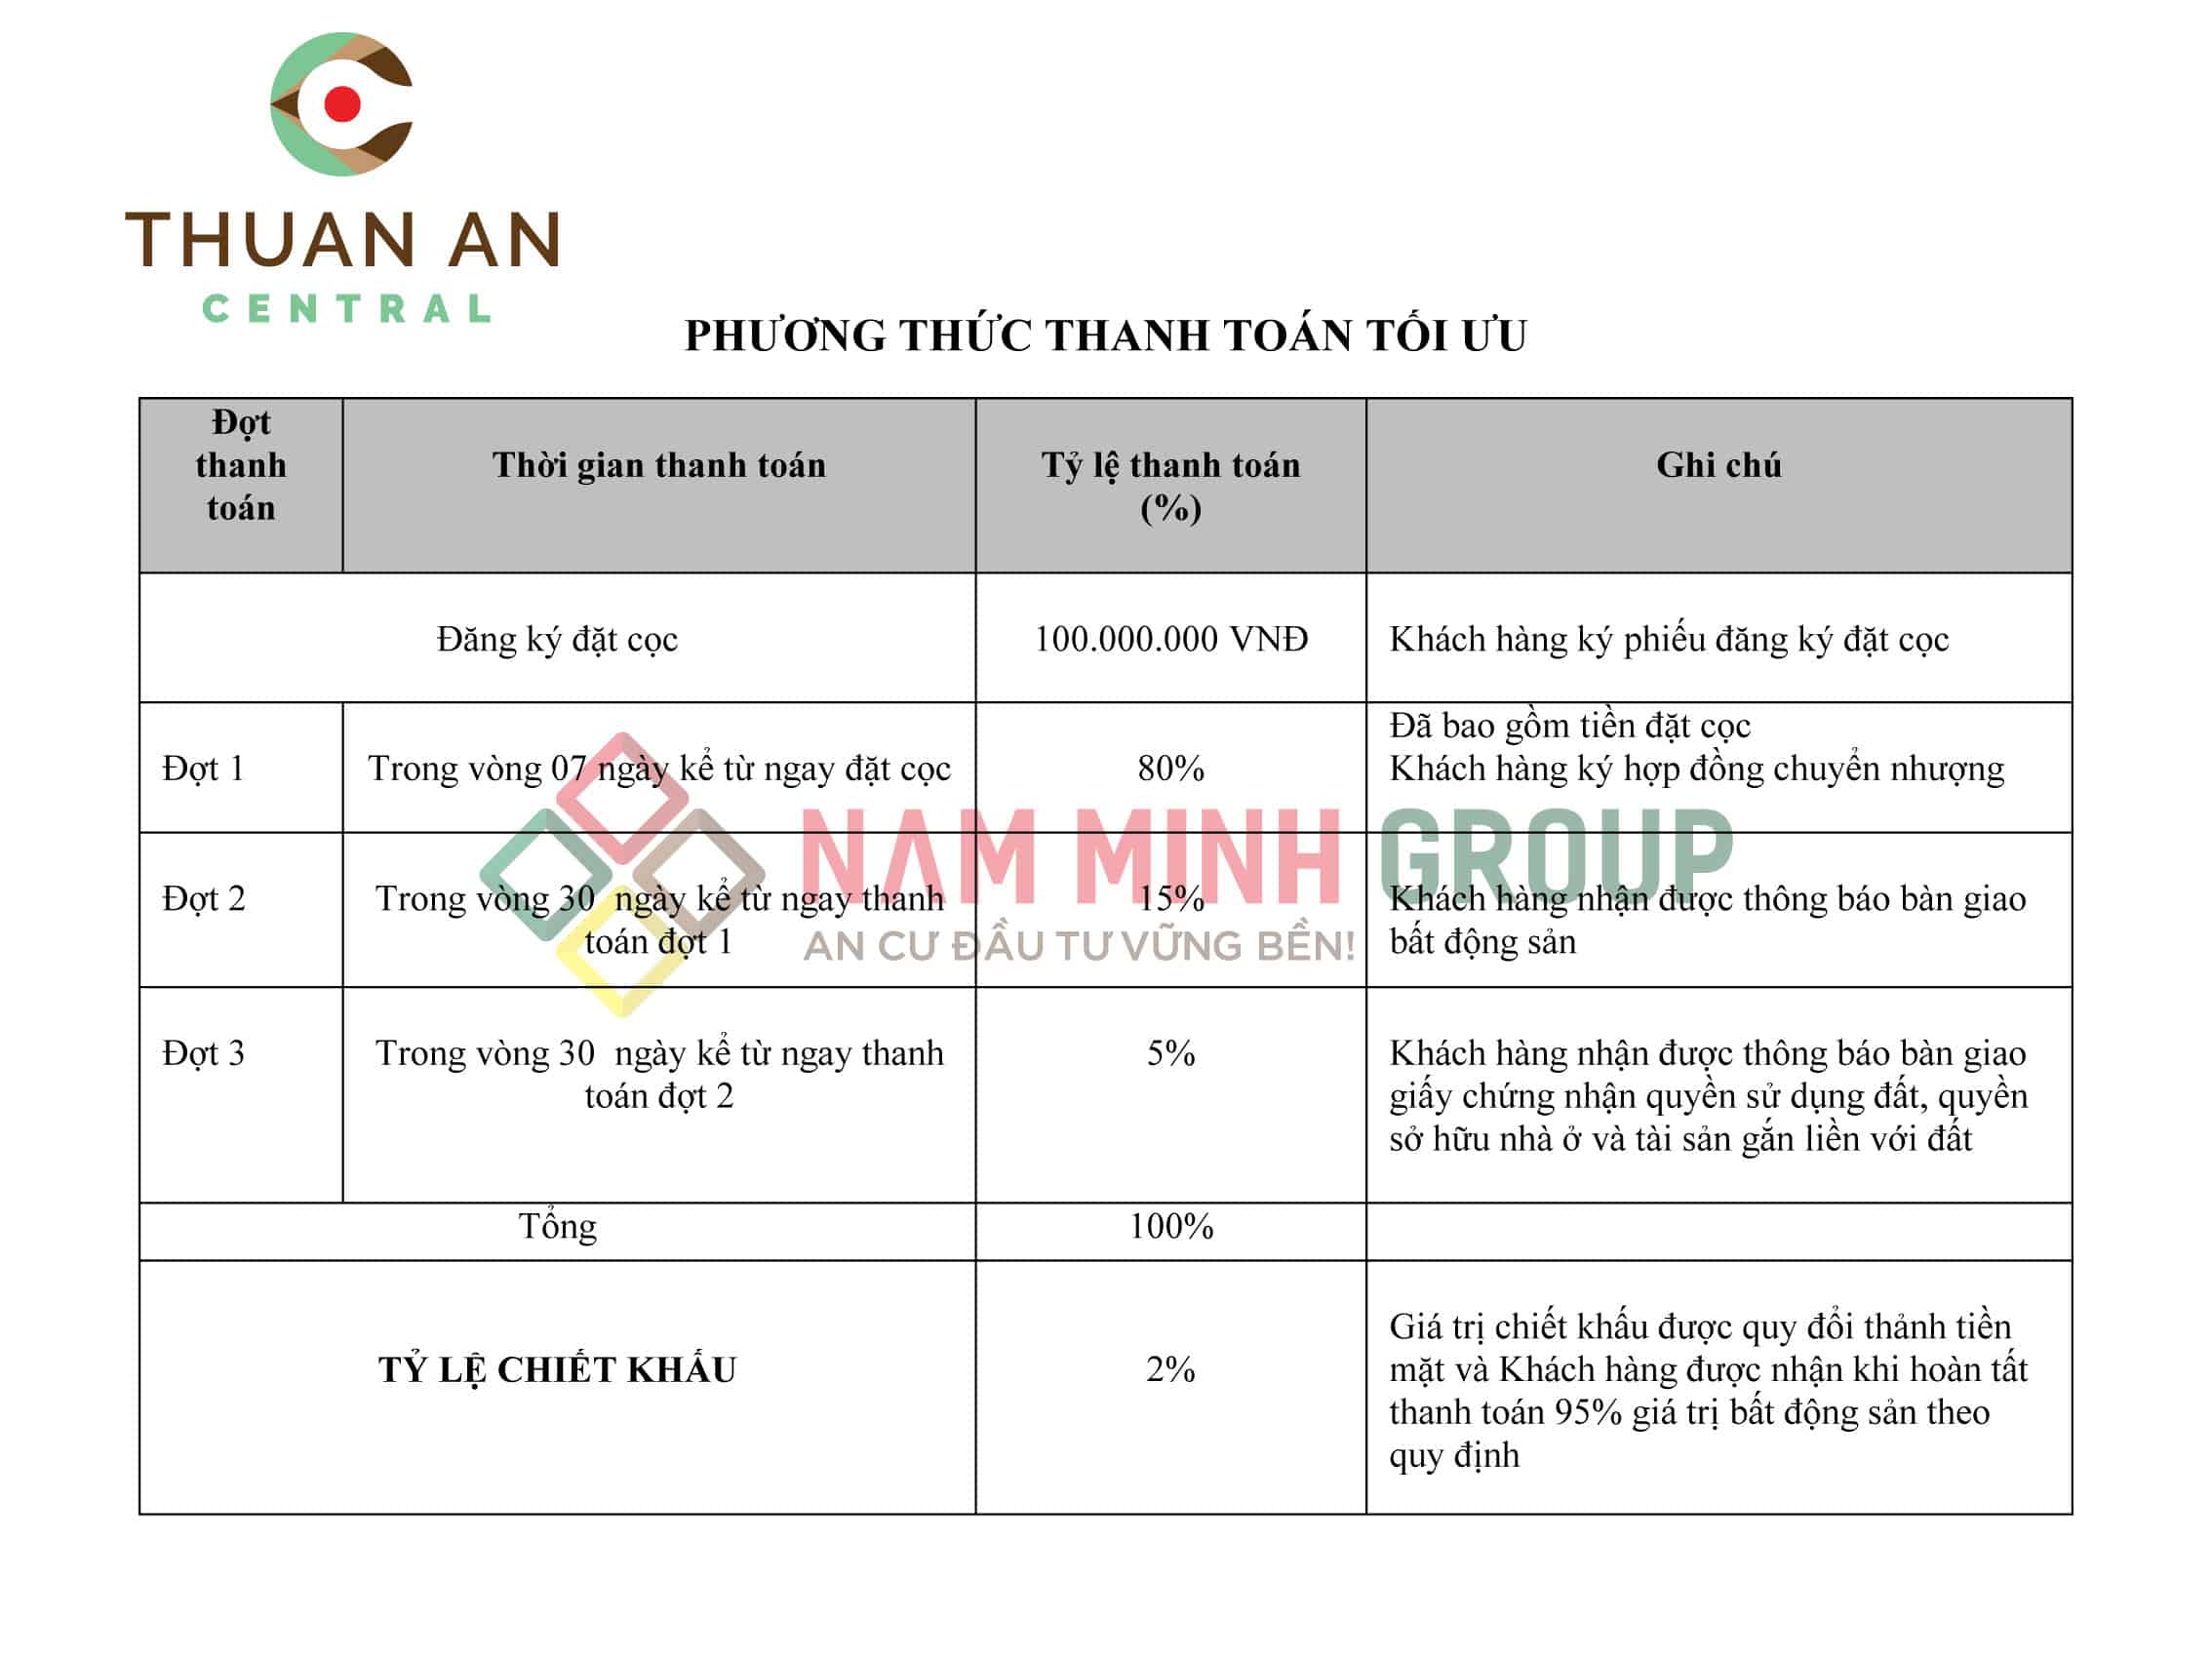 Phường thức thanh toán tối ưu Thuận An Central